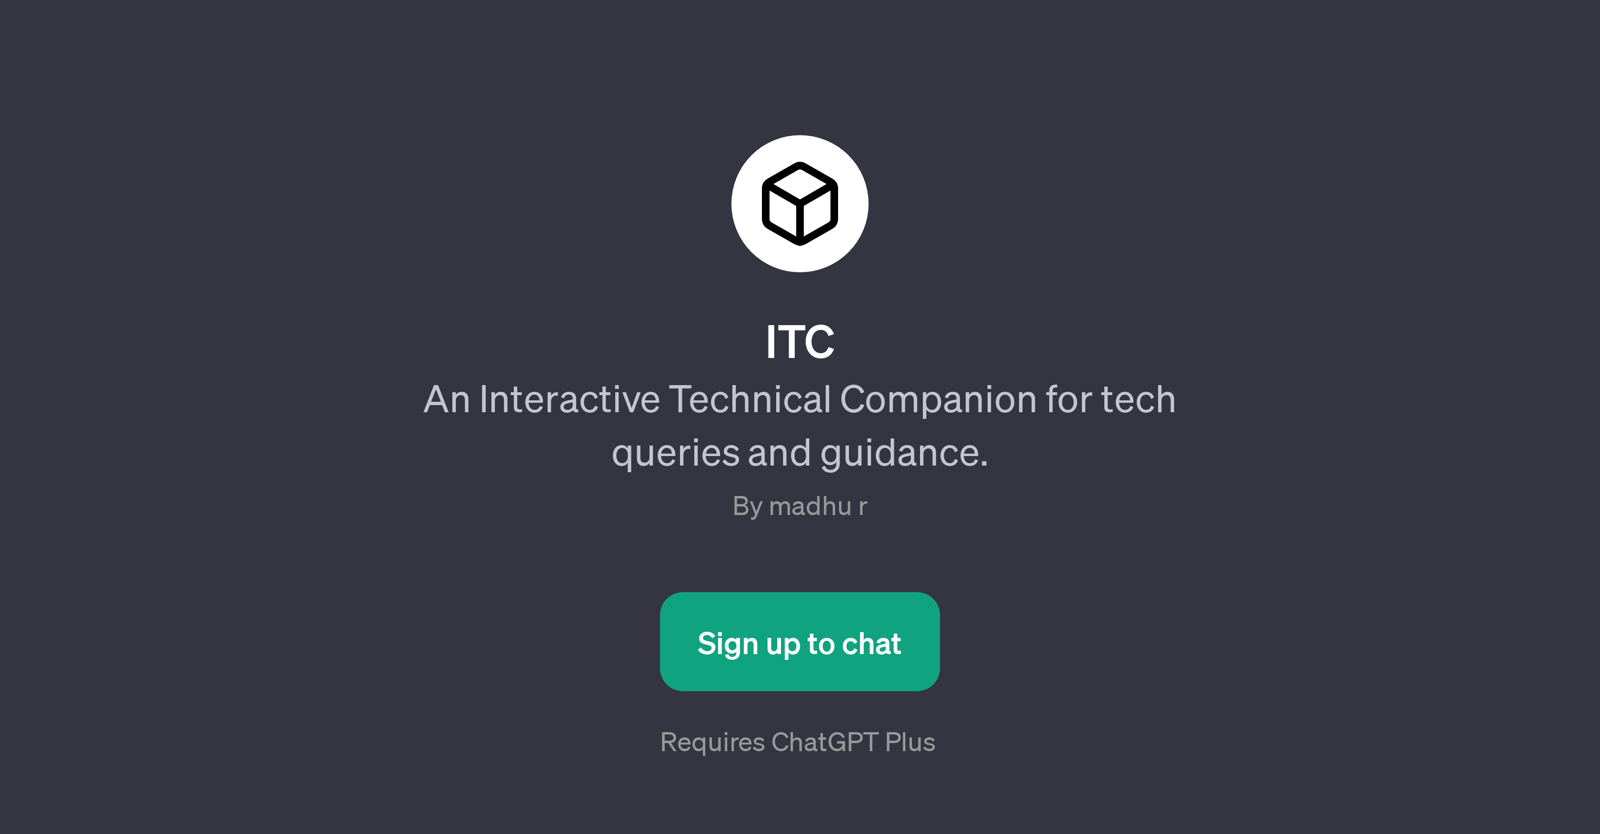 ITC website